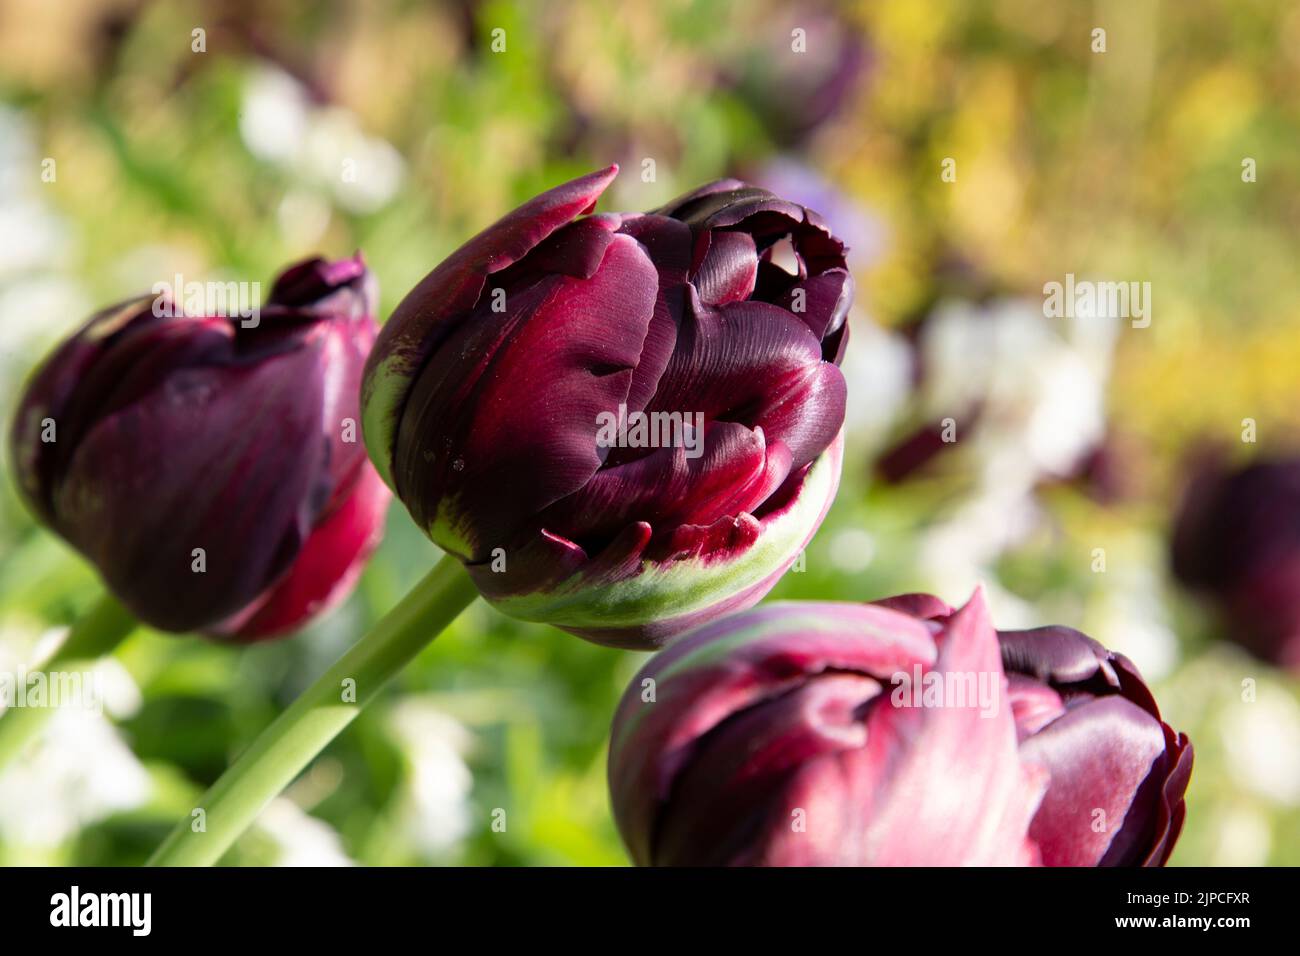 Tulip 'Black Hero' flowering in Spring Stock Photo